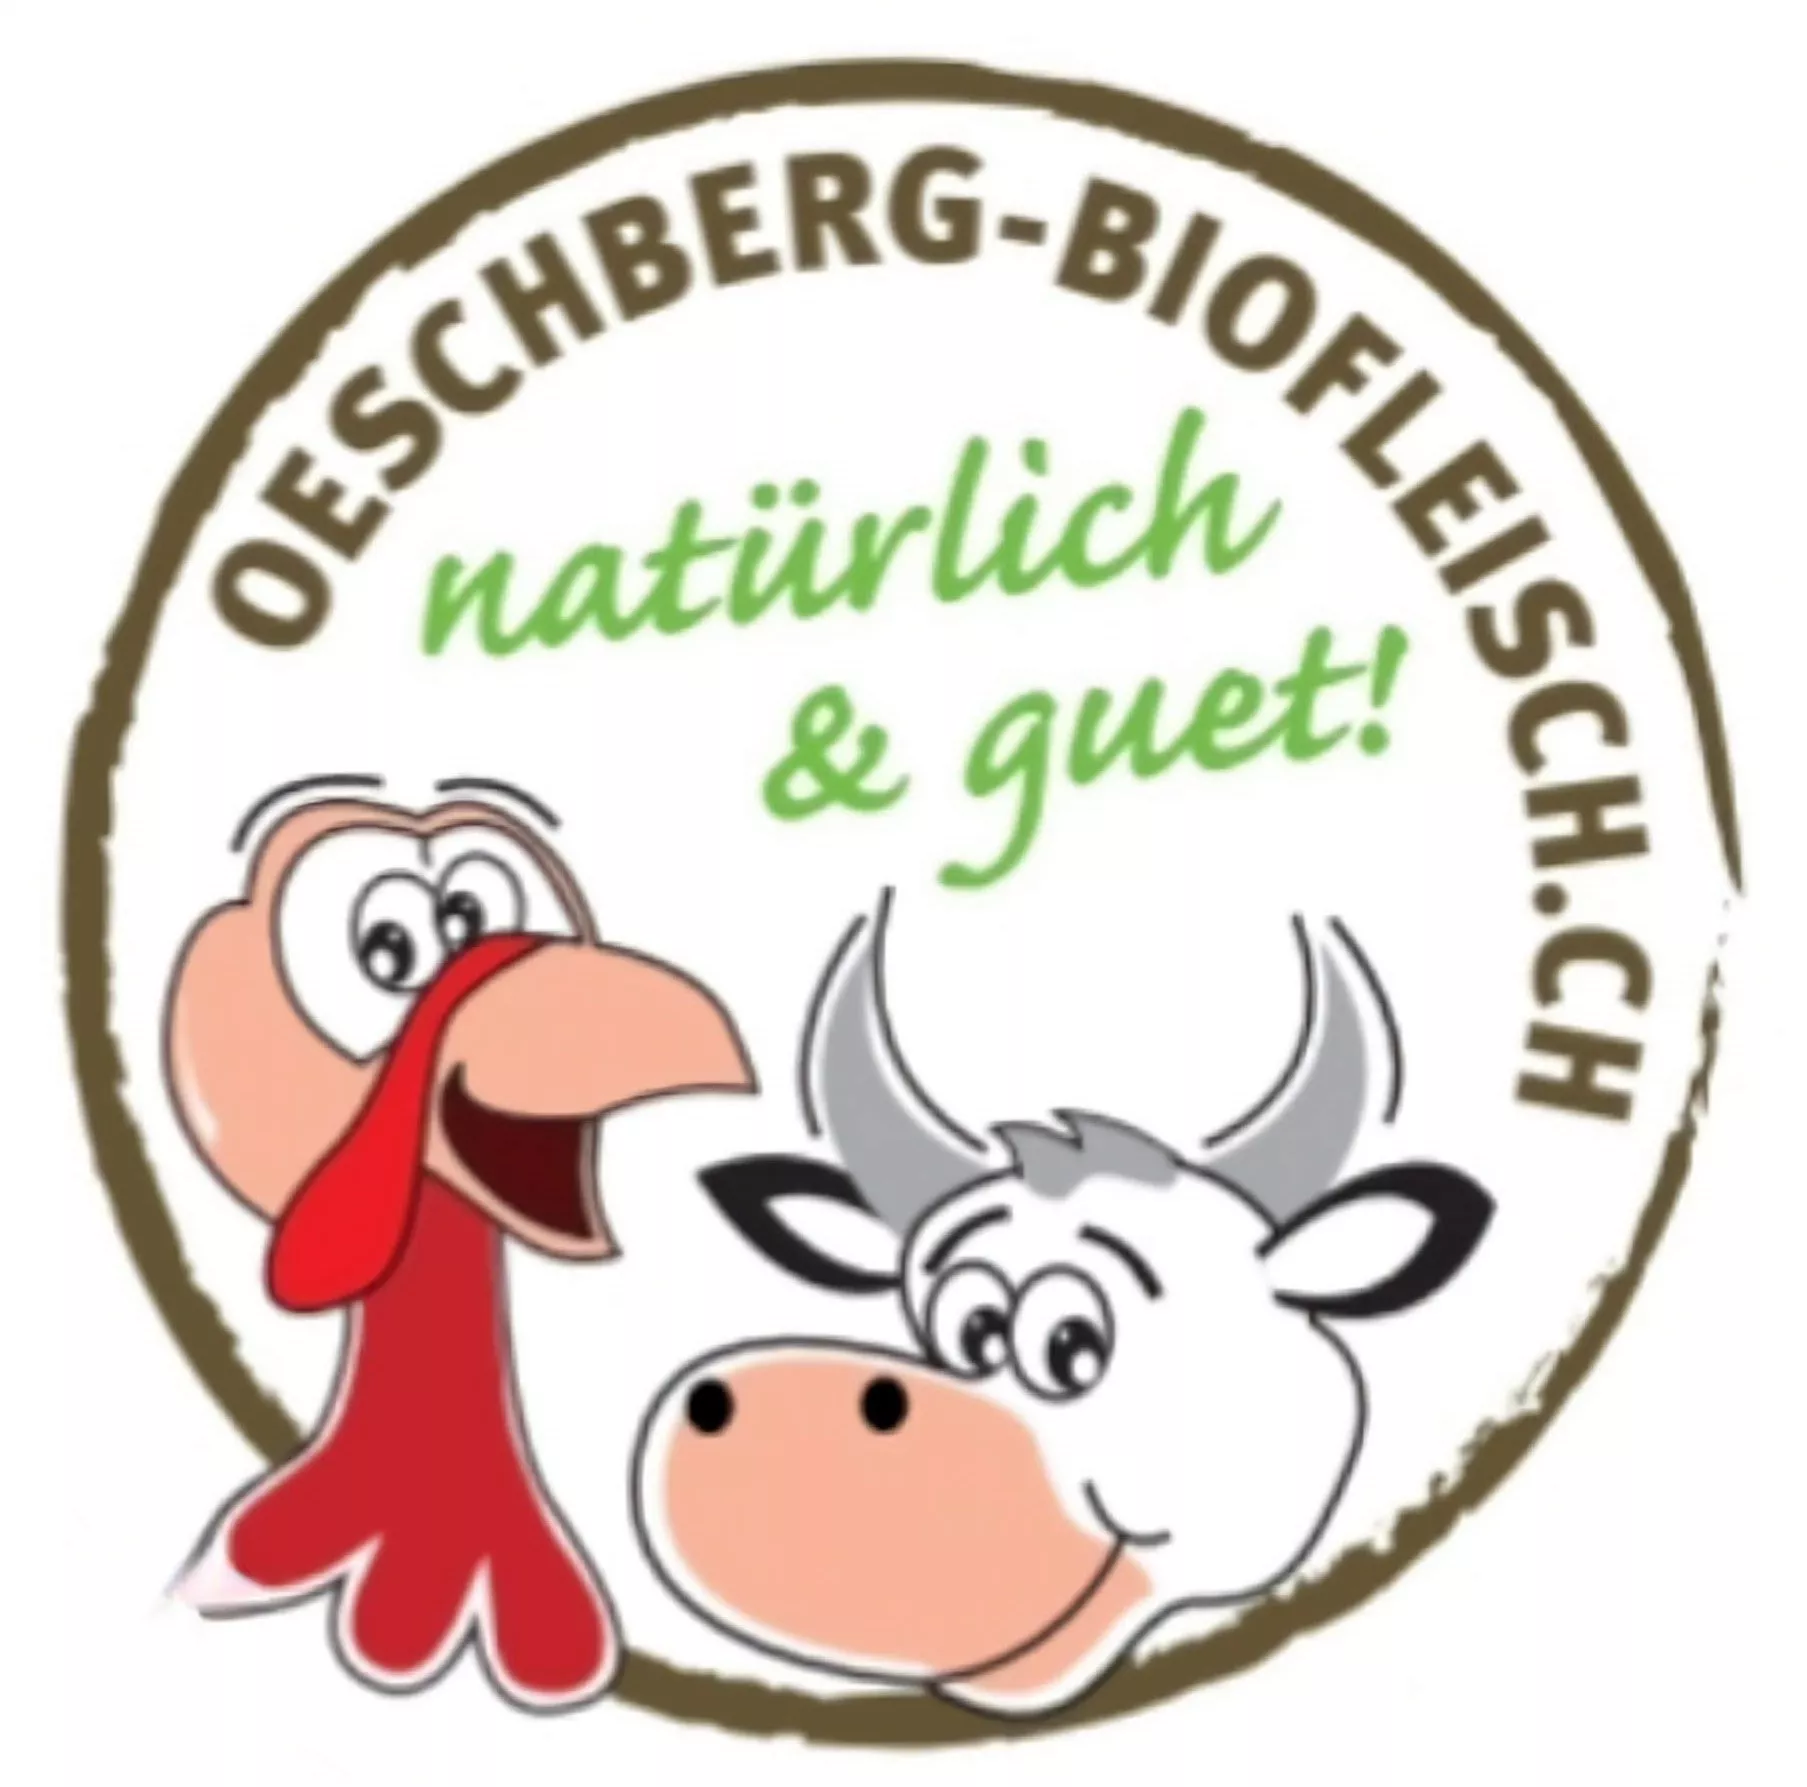 Oeschberg Biofleisch